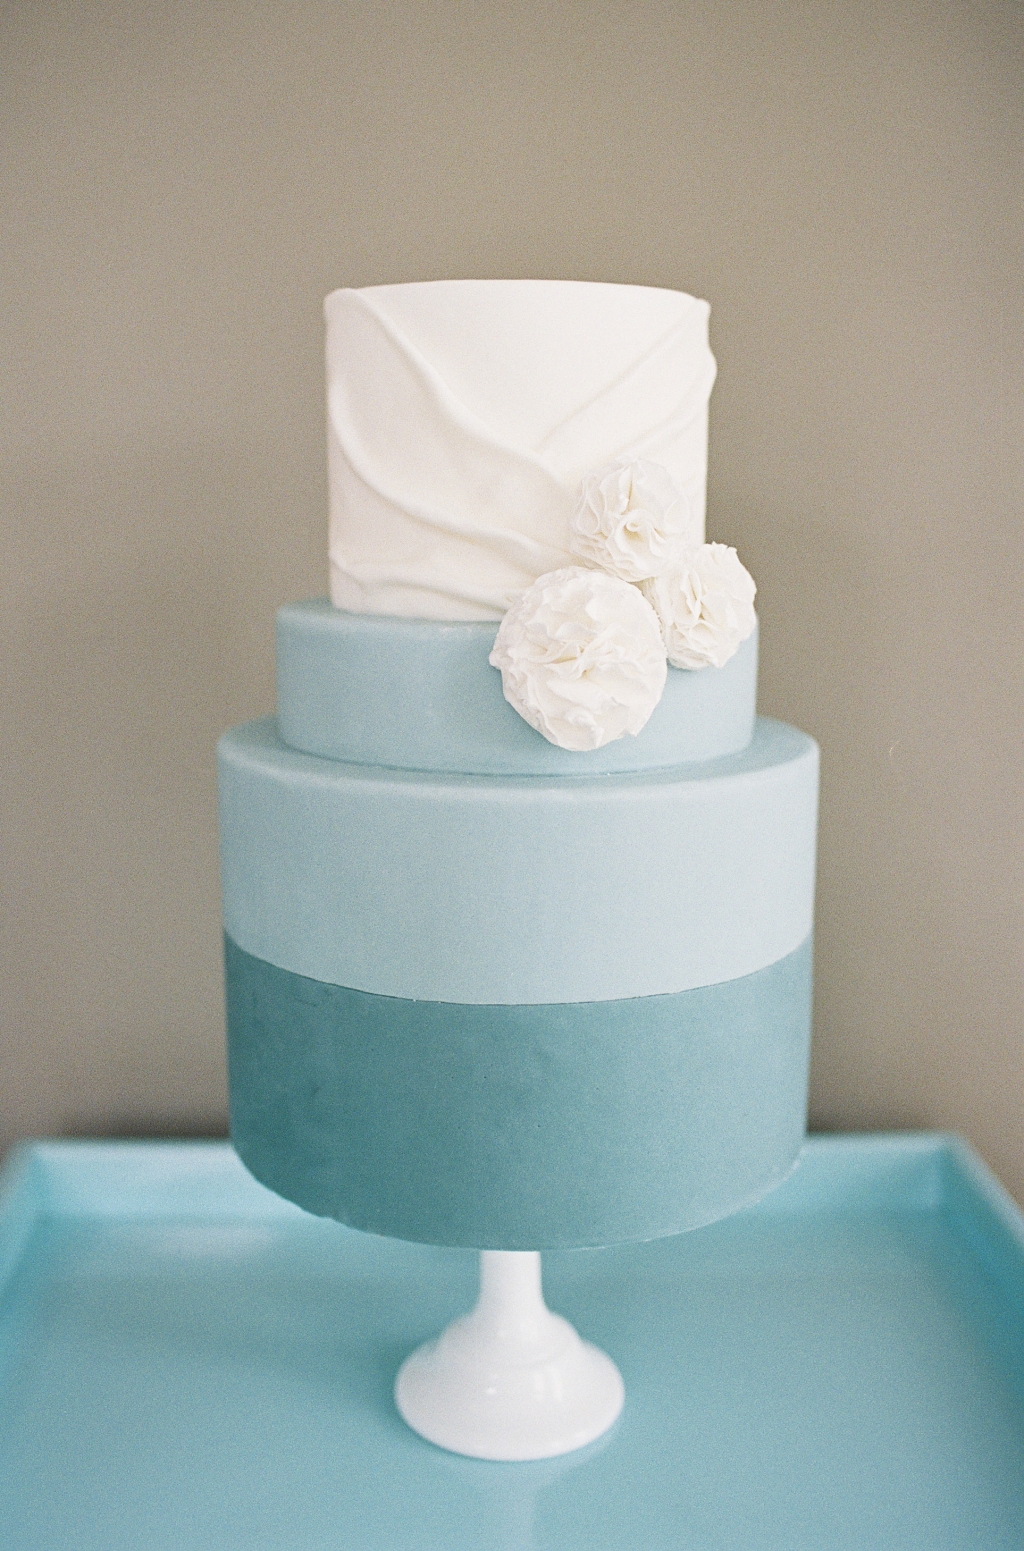 Turquoise and white wedding cake